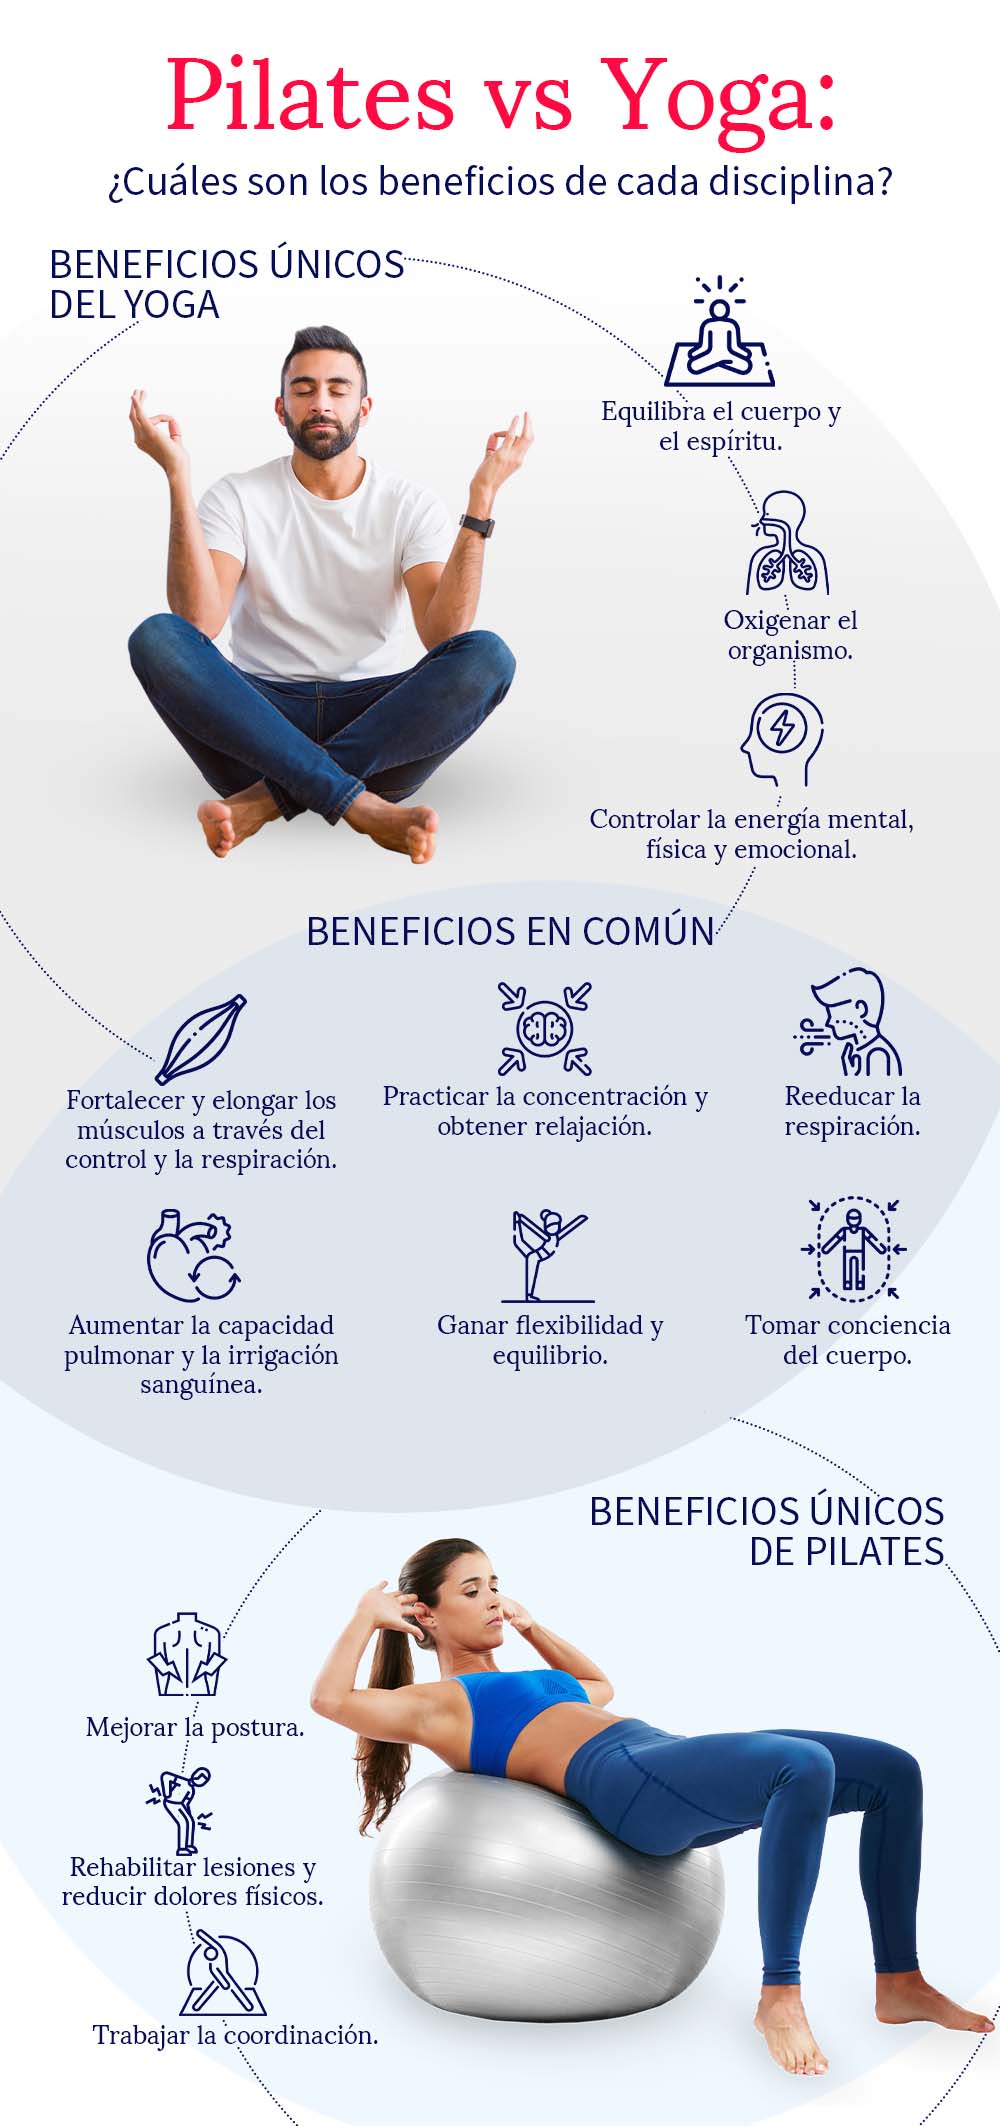 https://aprende.com/wp-content/uploads/2021/11/pilates-vs-yoga-beneficios-infografia.jpg